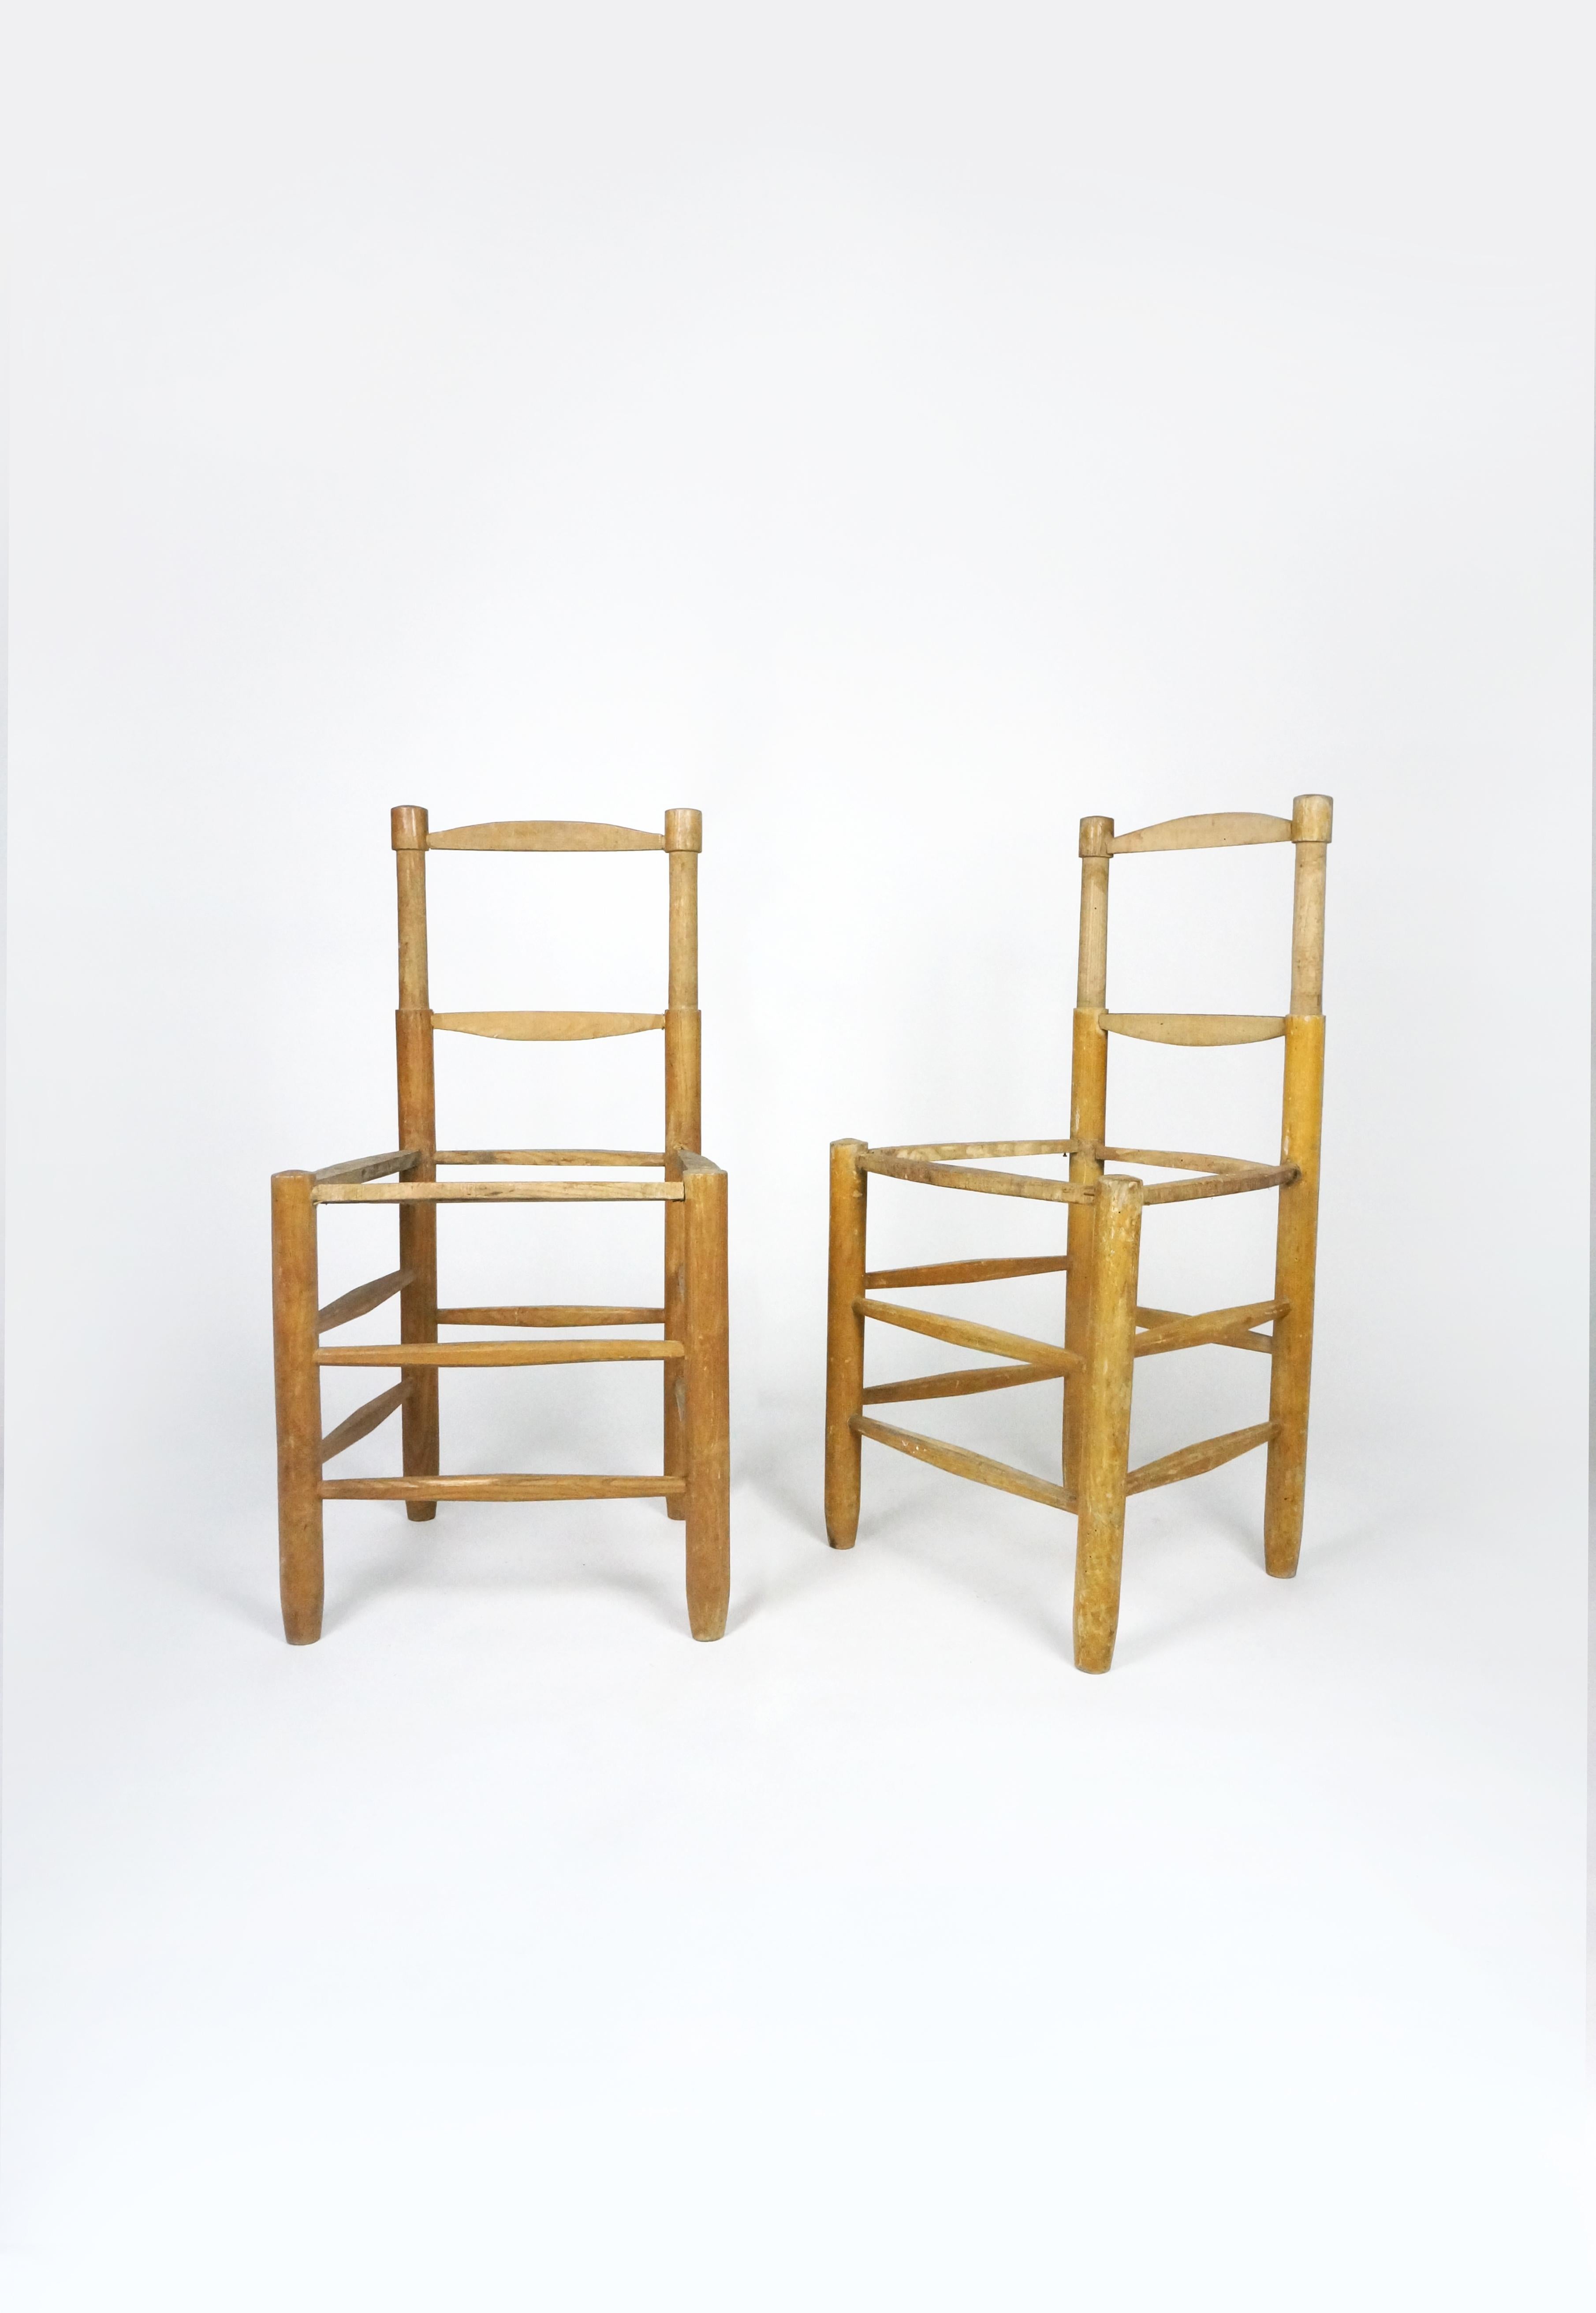 Schönes Paar Charlotte Perriand Stühle Modell Bauche n°18 (mit gerader Rückenlehne). 

Diese Stühle wurden von der berühmten französischen Designerin Charlotte Perriand entworfen. Sie wurden ursprünglich 1938 entworfen, diese beiden wurden in den